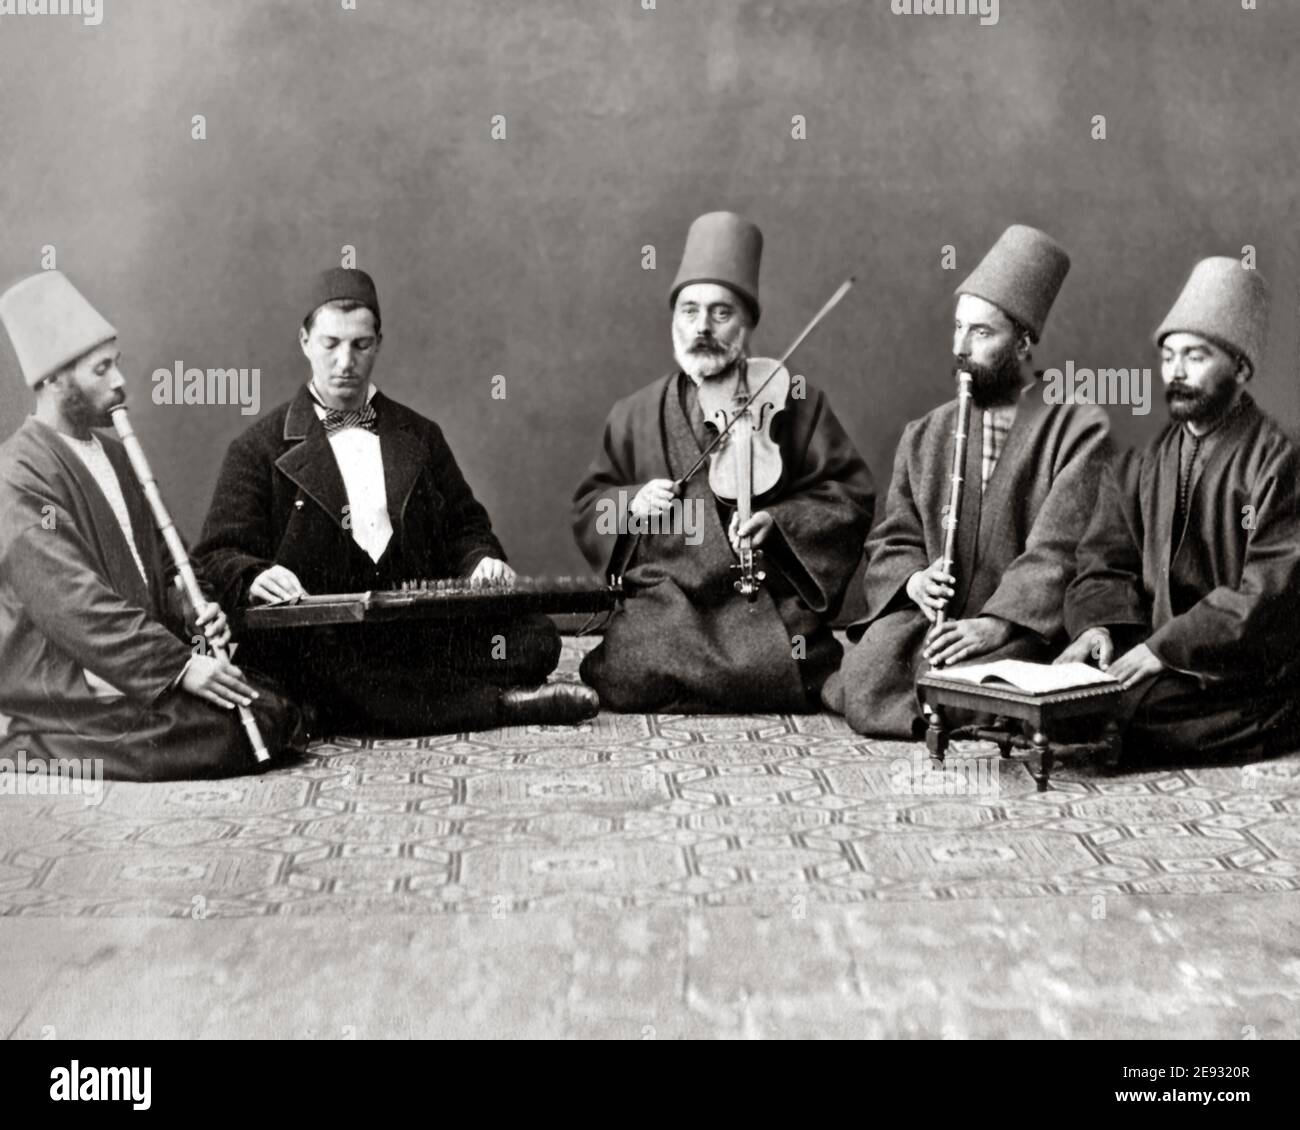 Photographie de la fin du XIXe siècle - musiciens turcs avec instruments de musique, Turquie. Banque D'Images